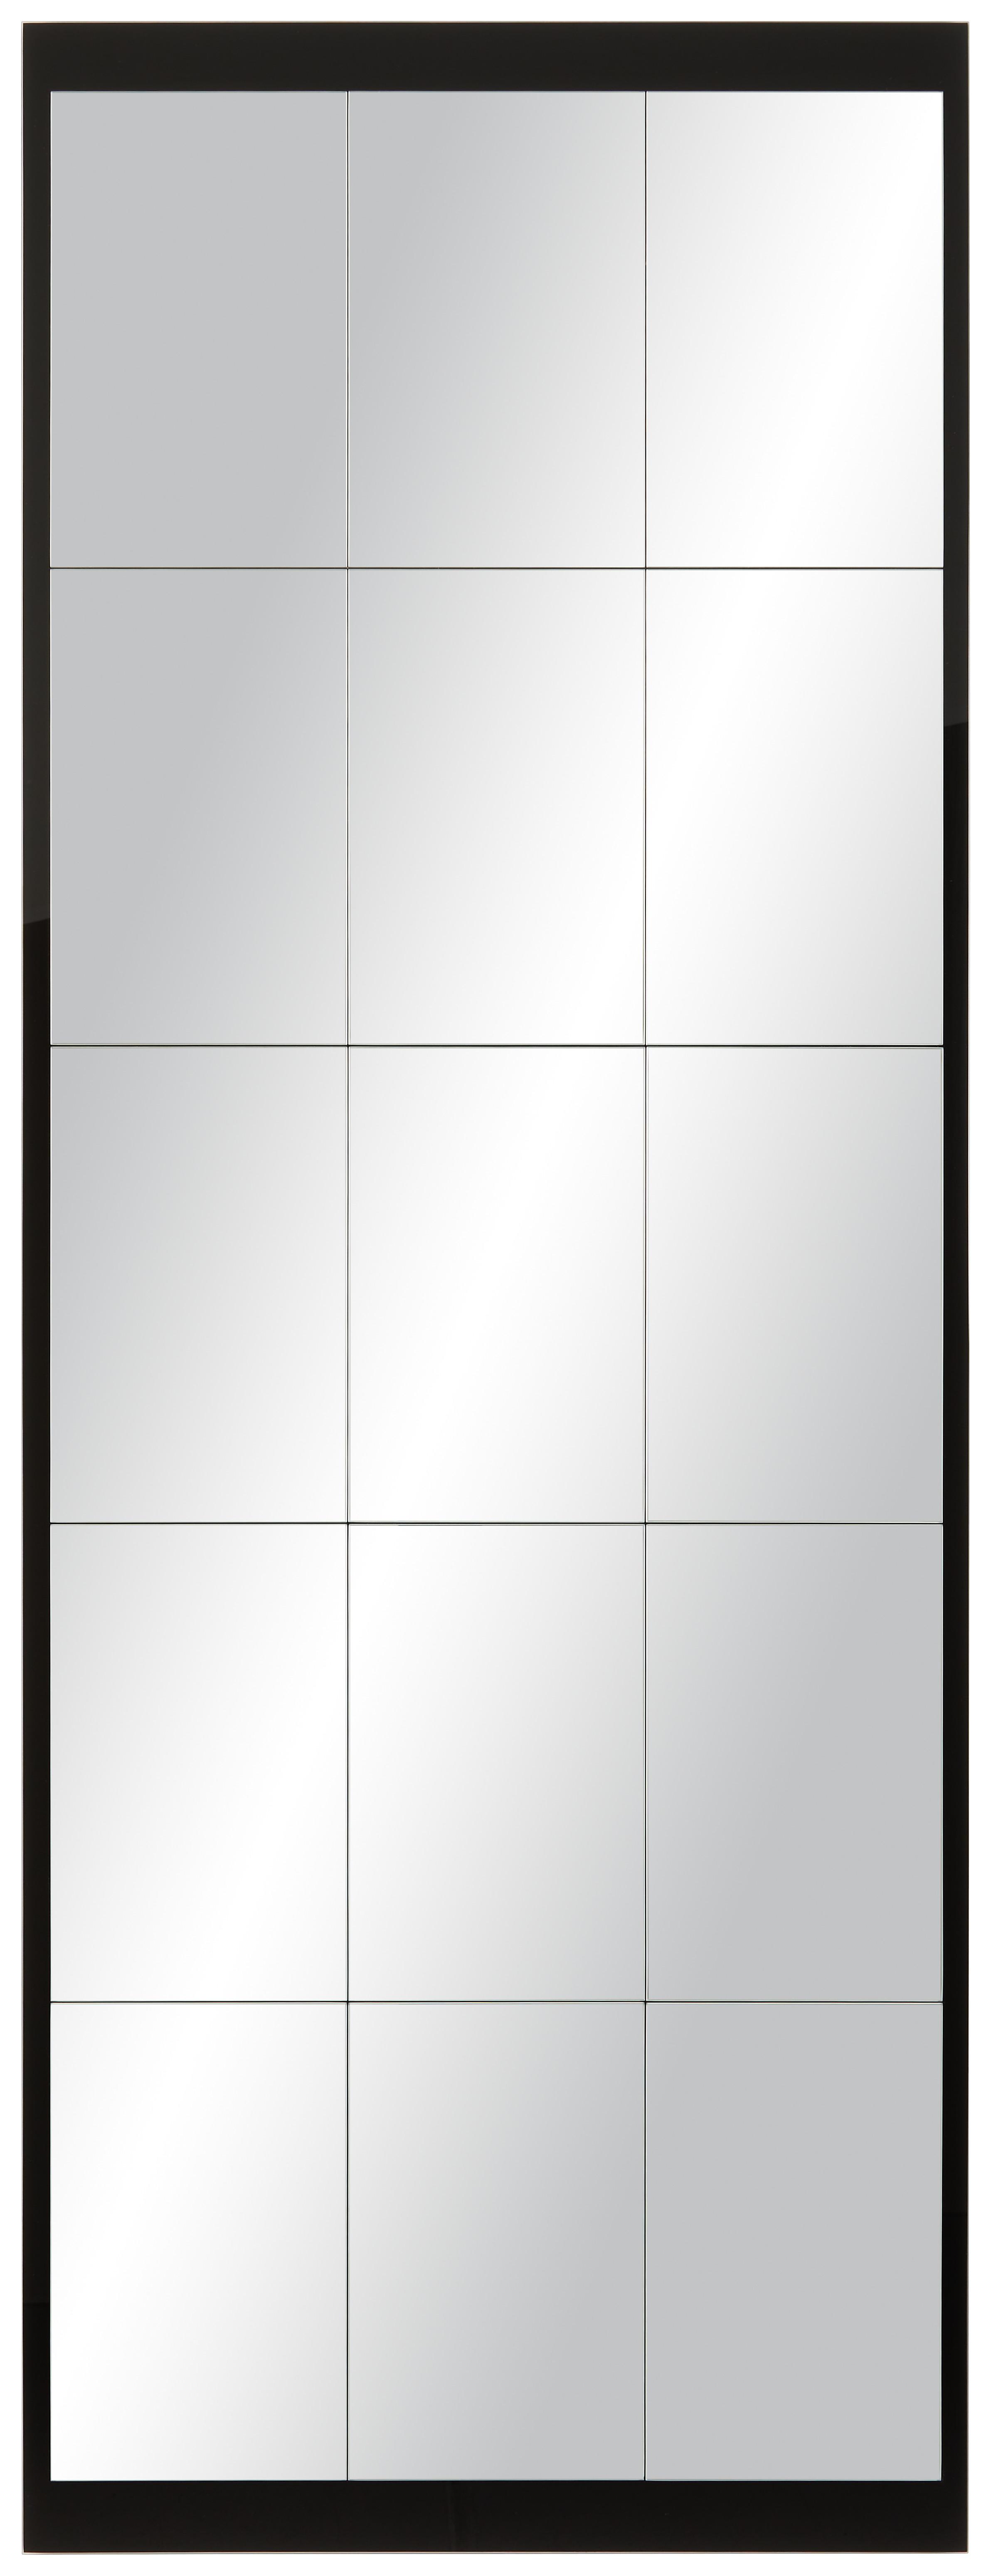 Wandspiegel in Schwarz - Schwarz, MODERN, Glas (64/170cm) - Modern Living